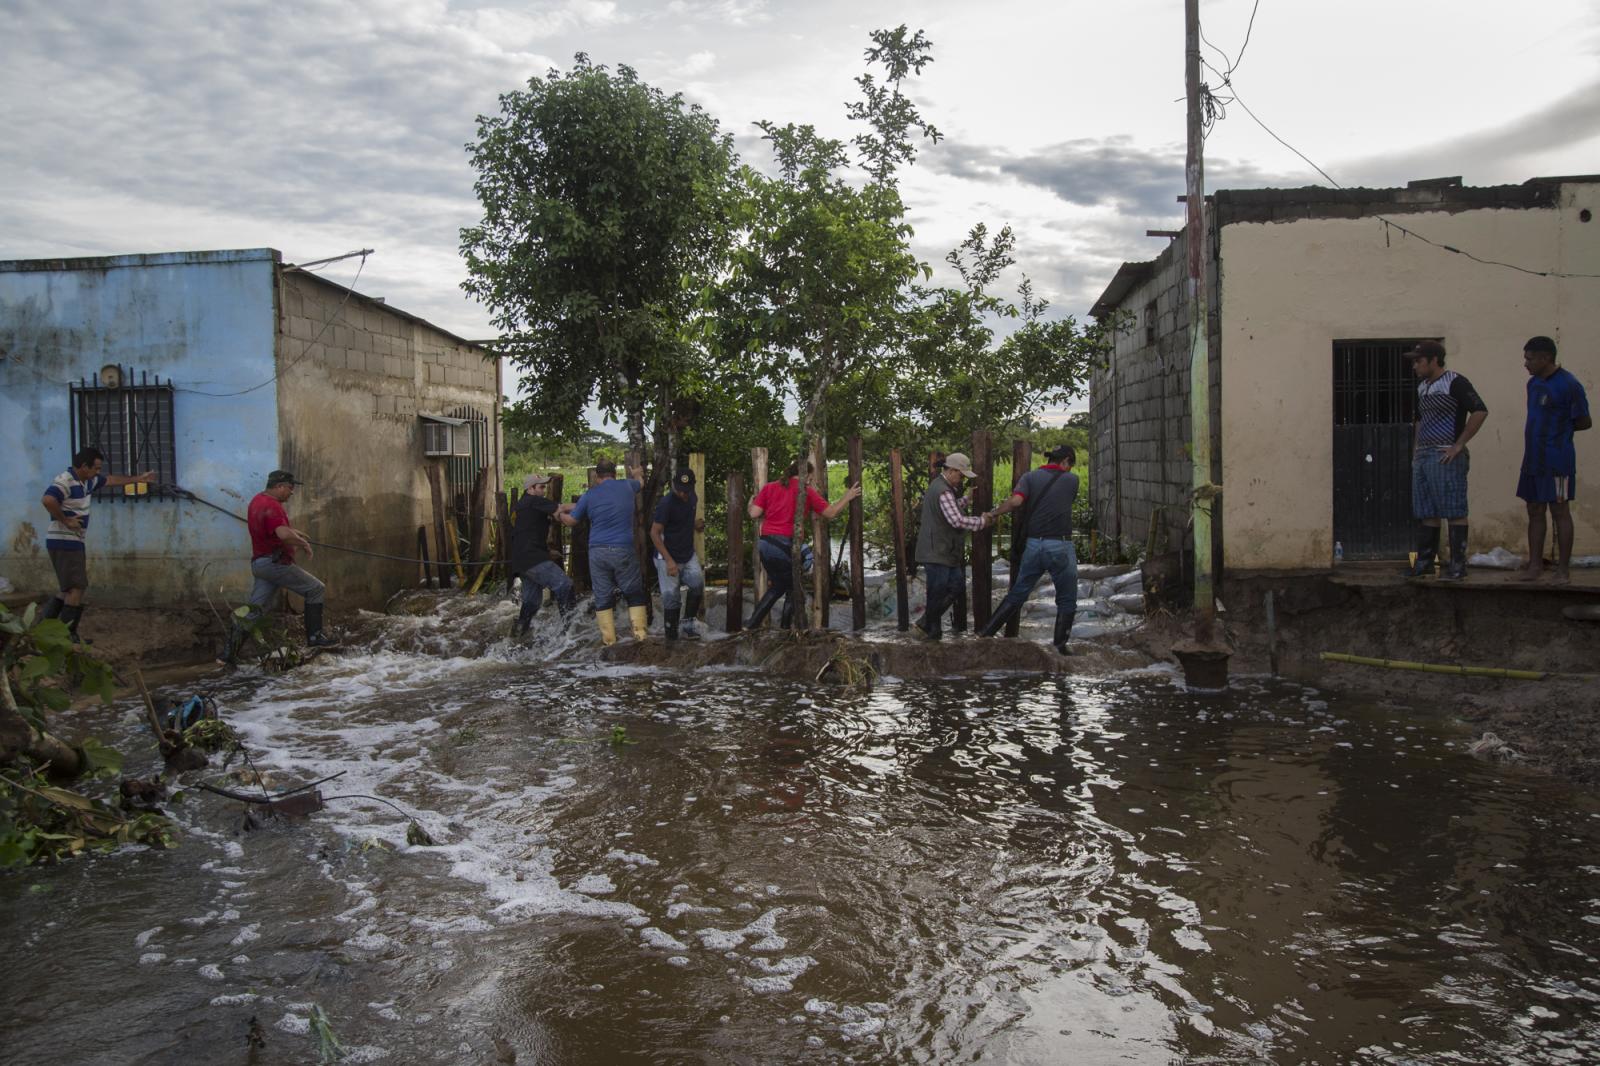  Un grupo de personas cruza el r&iacute;o desbordado, mientras una cuadrilla de trabajadores intenta frenar el agua, en Guasdualito, el 6 de julio de 2015. 